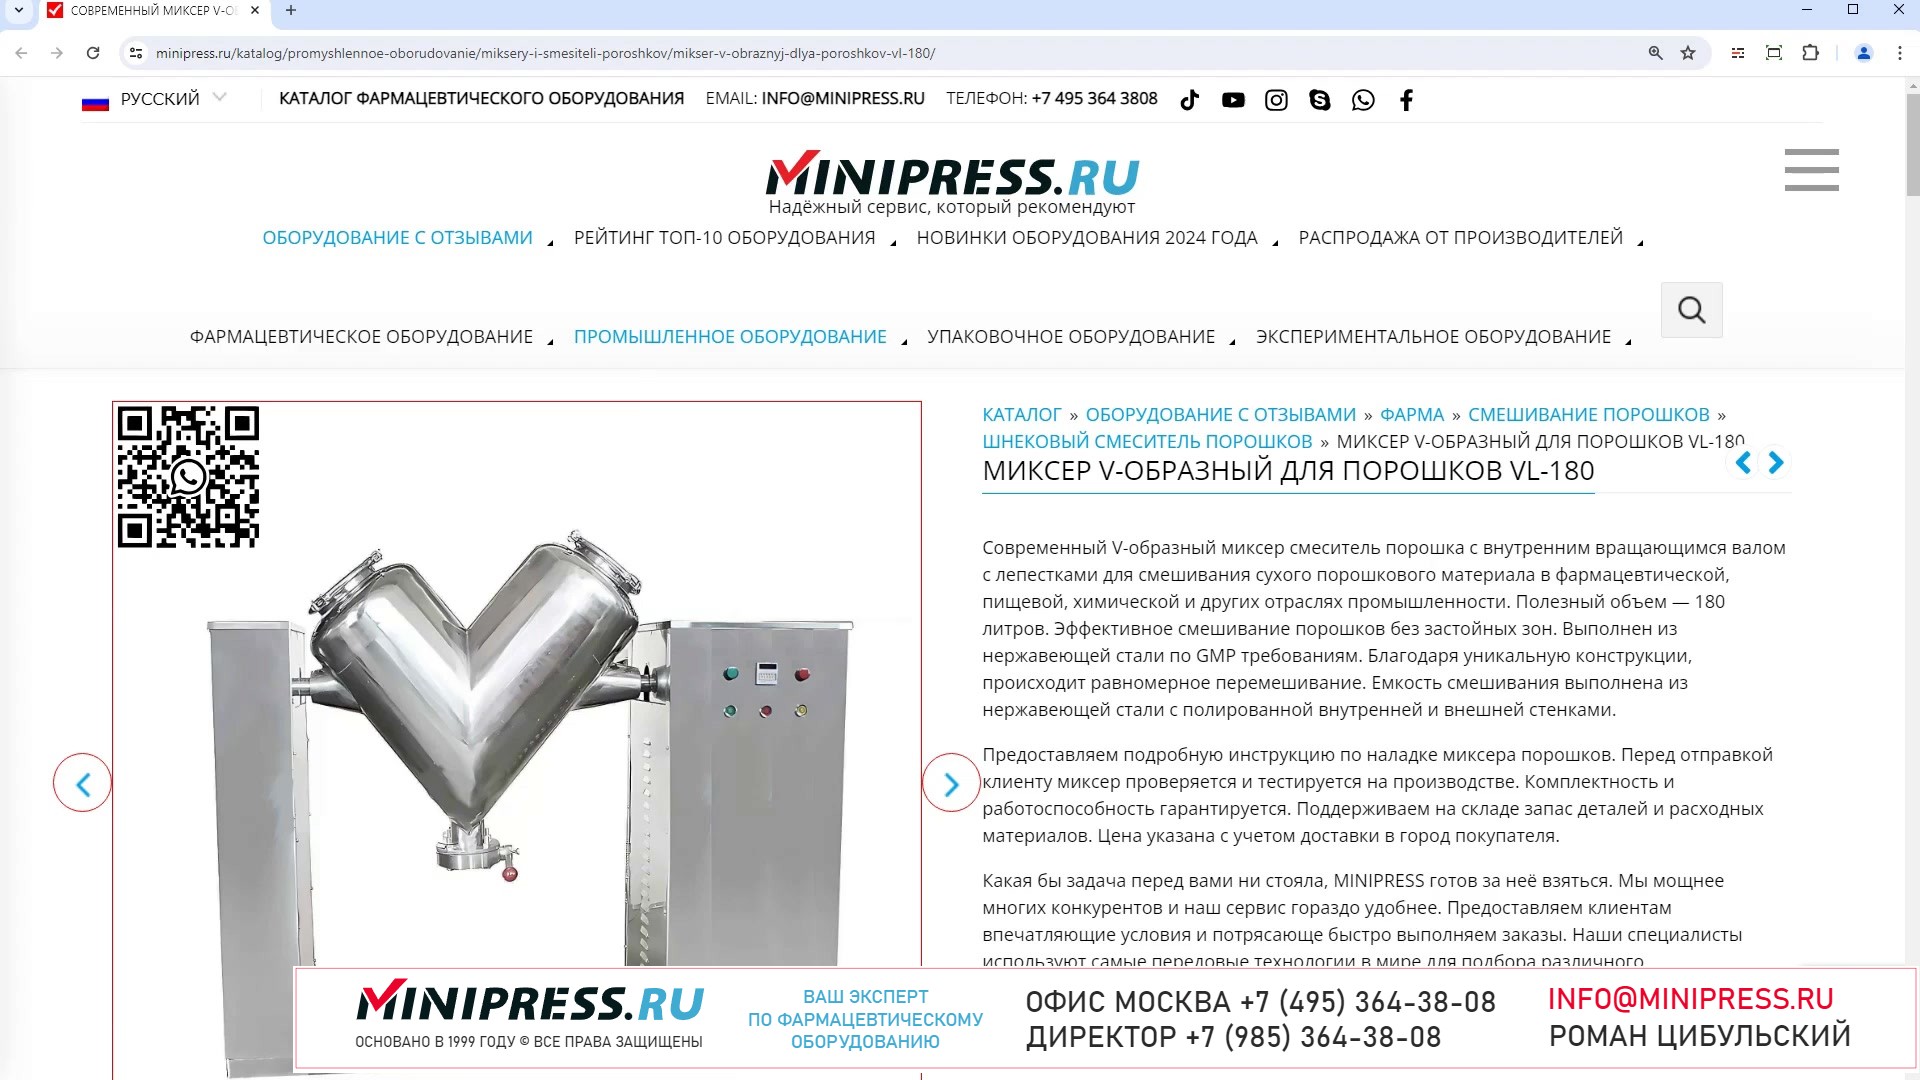 Minipress.ru Миксер V-образный для порошков VL-180